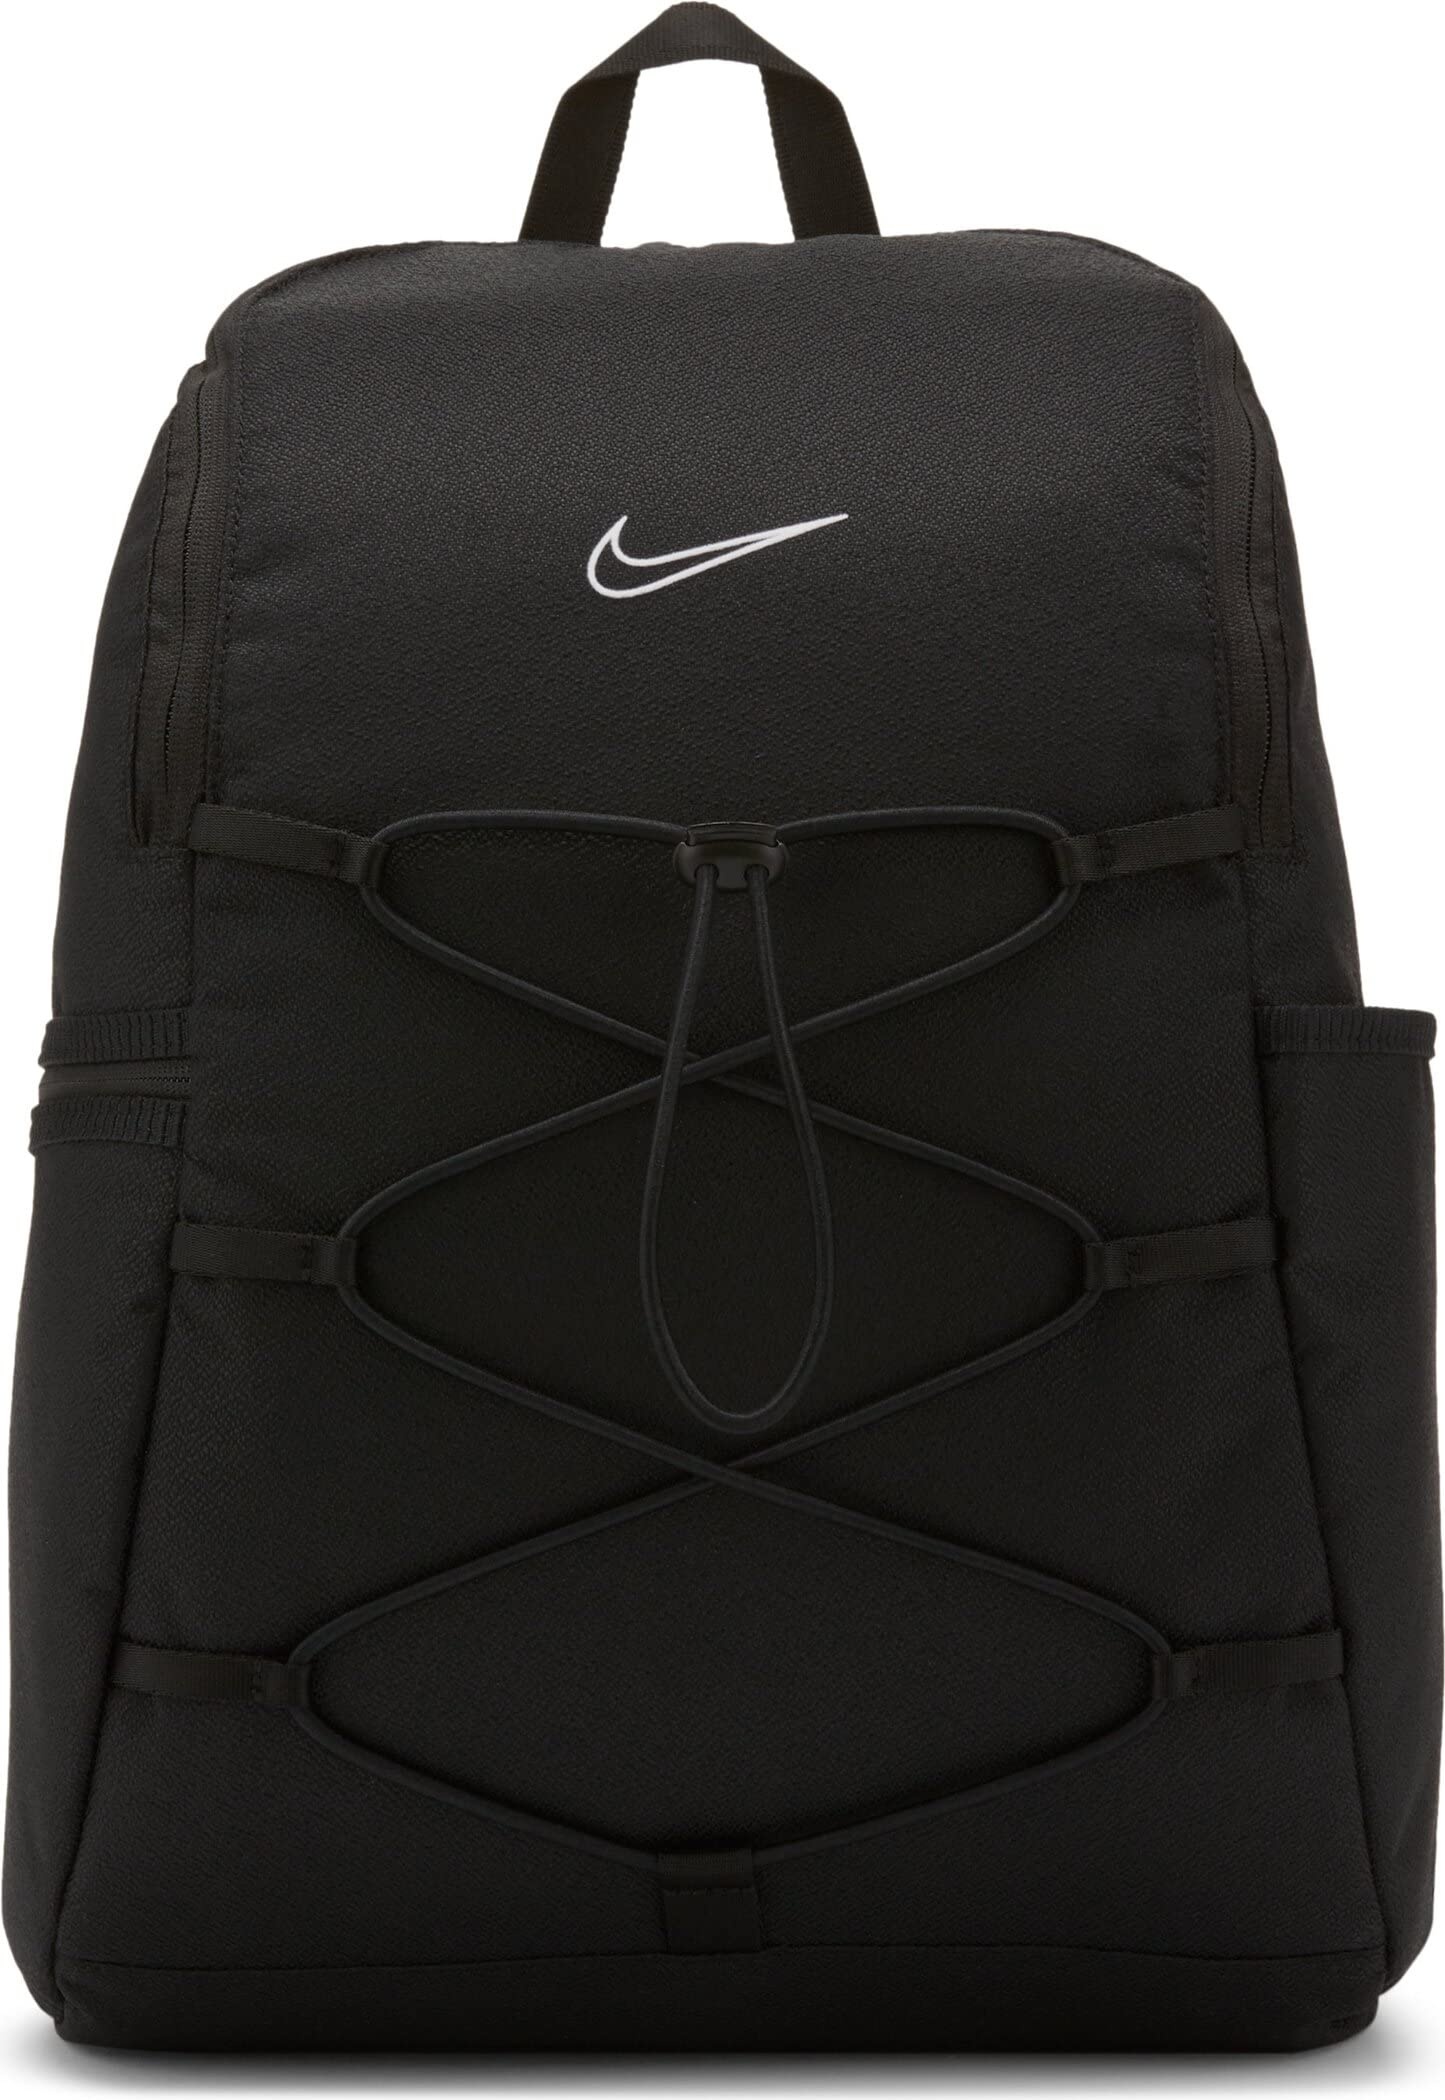 Nike CV0067-010 W NK ONE BKPK Sports backpack womens black/black/(white) MISC